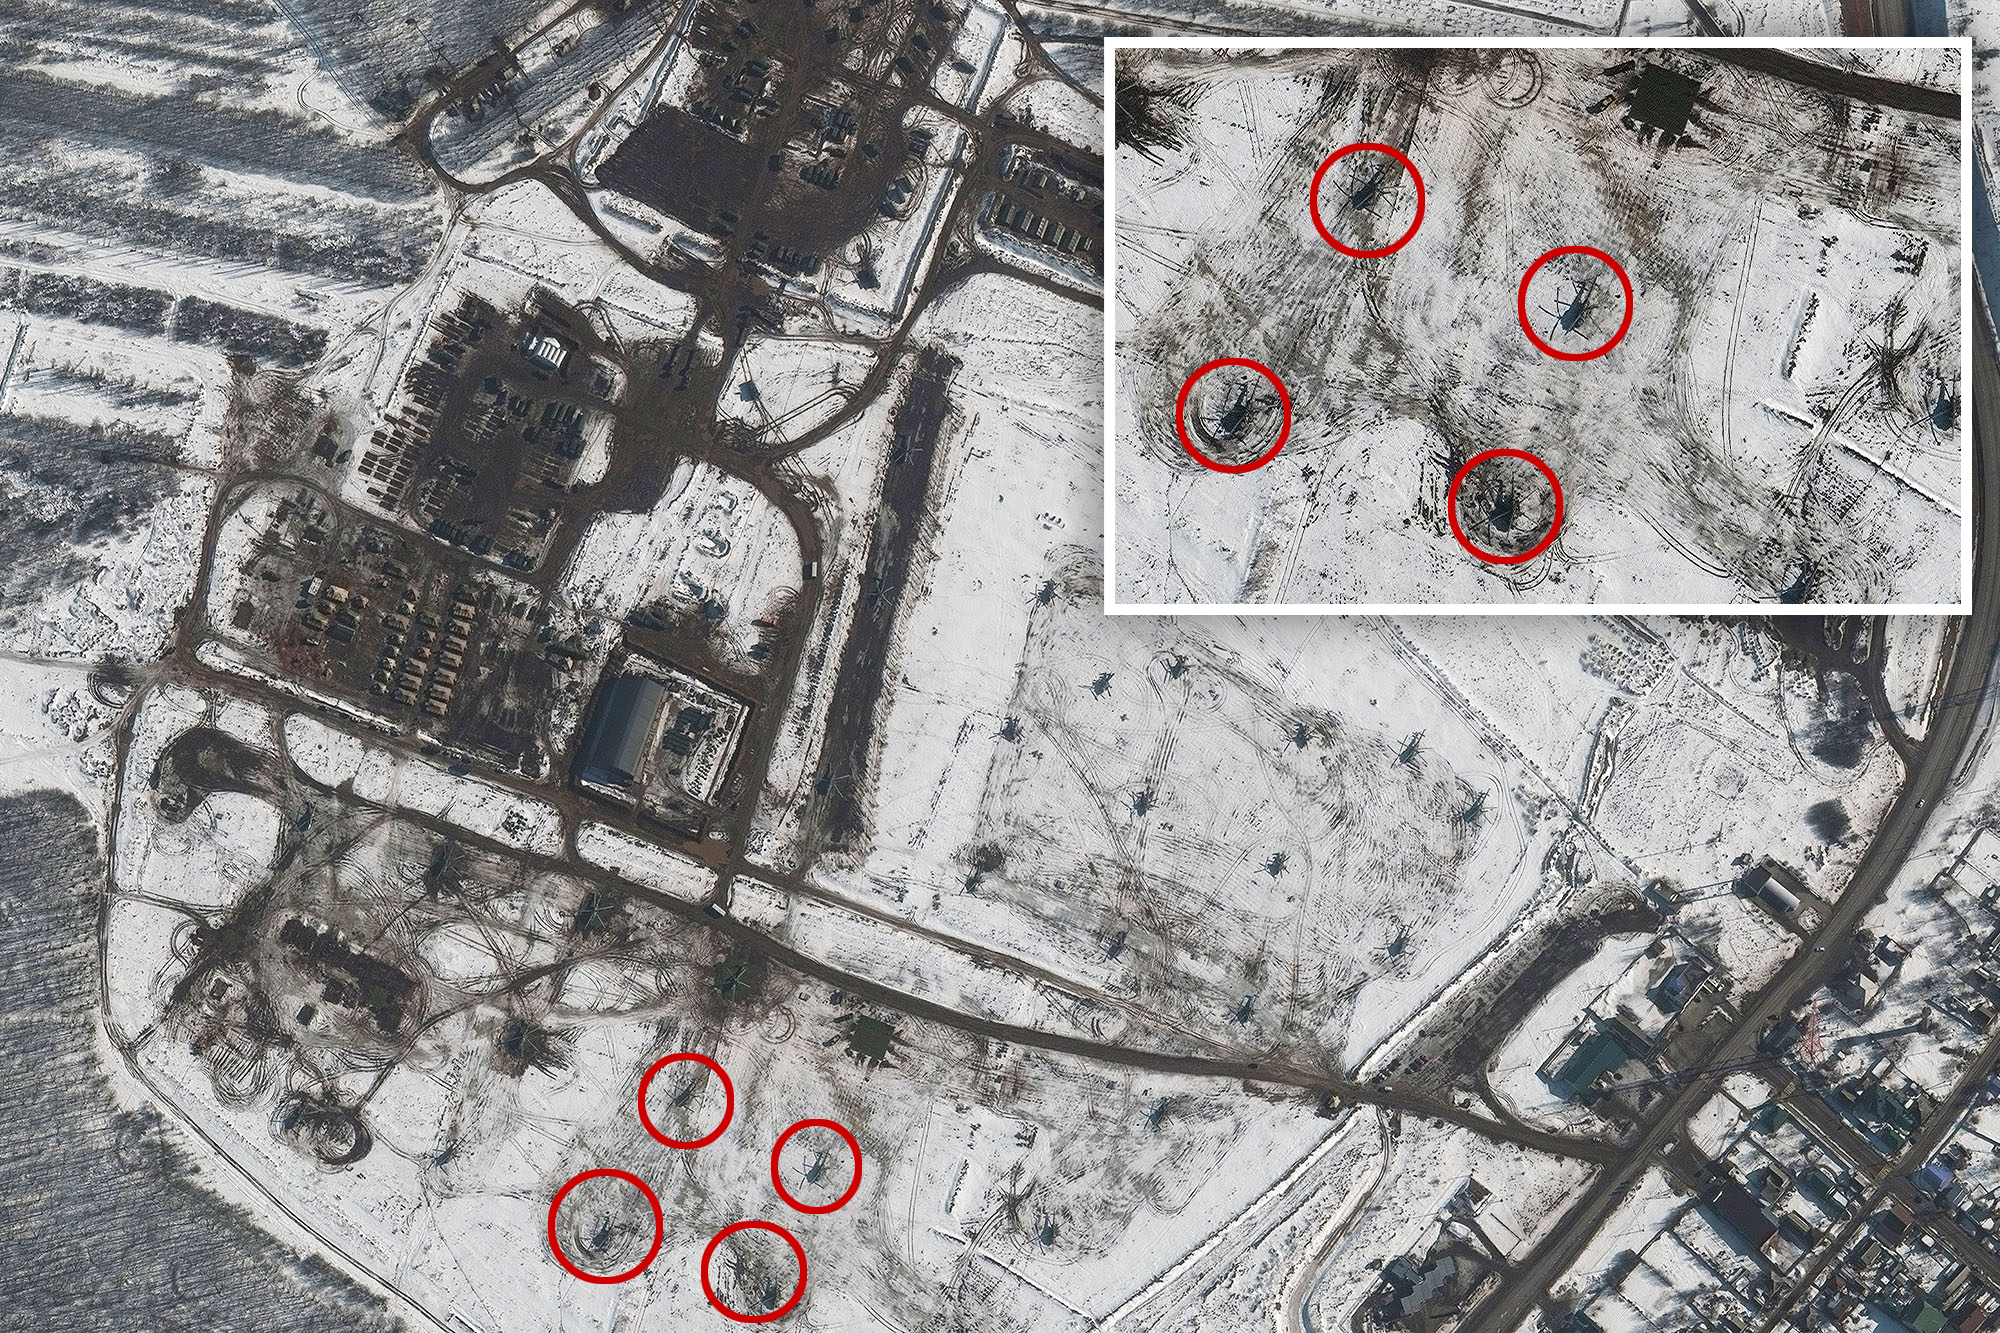 Imágenes satelitales muestran nuevos despliegues de tropas y blindados rusos cerca de Ucrania